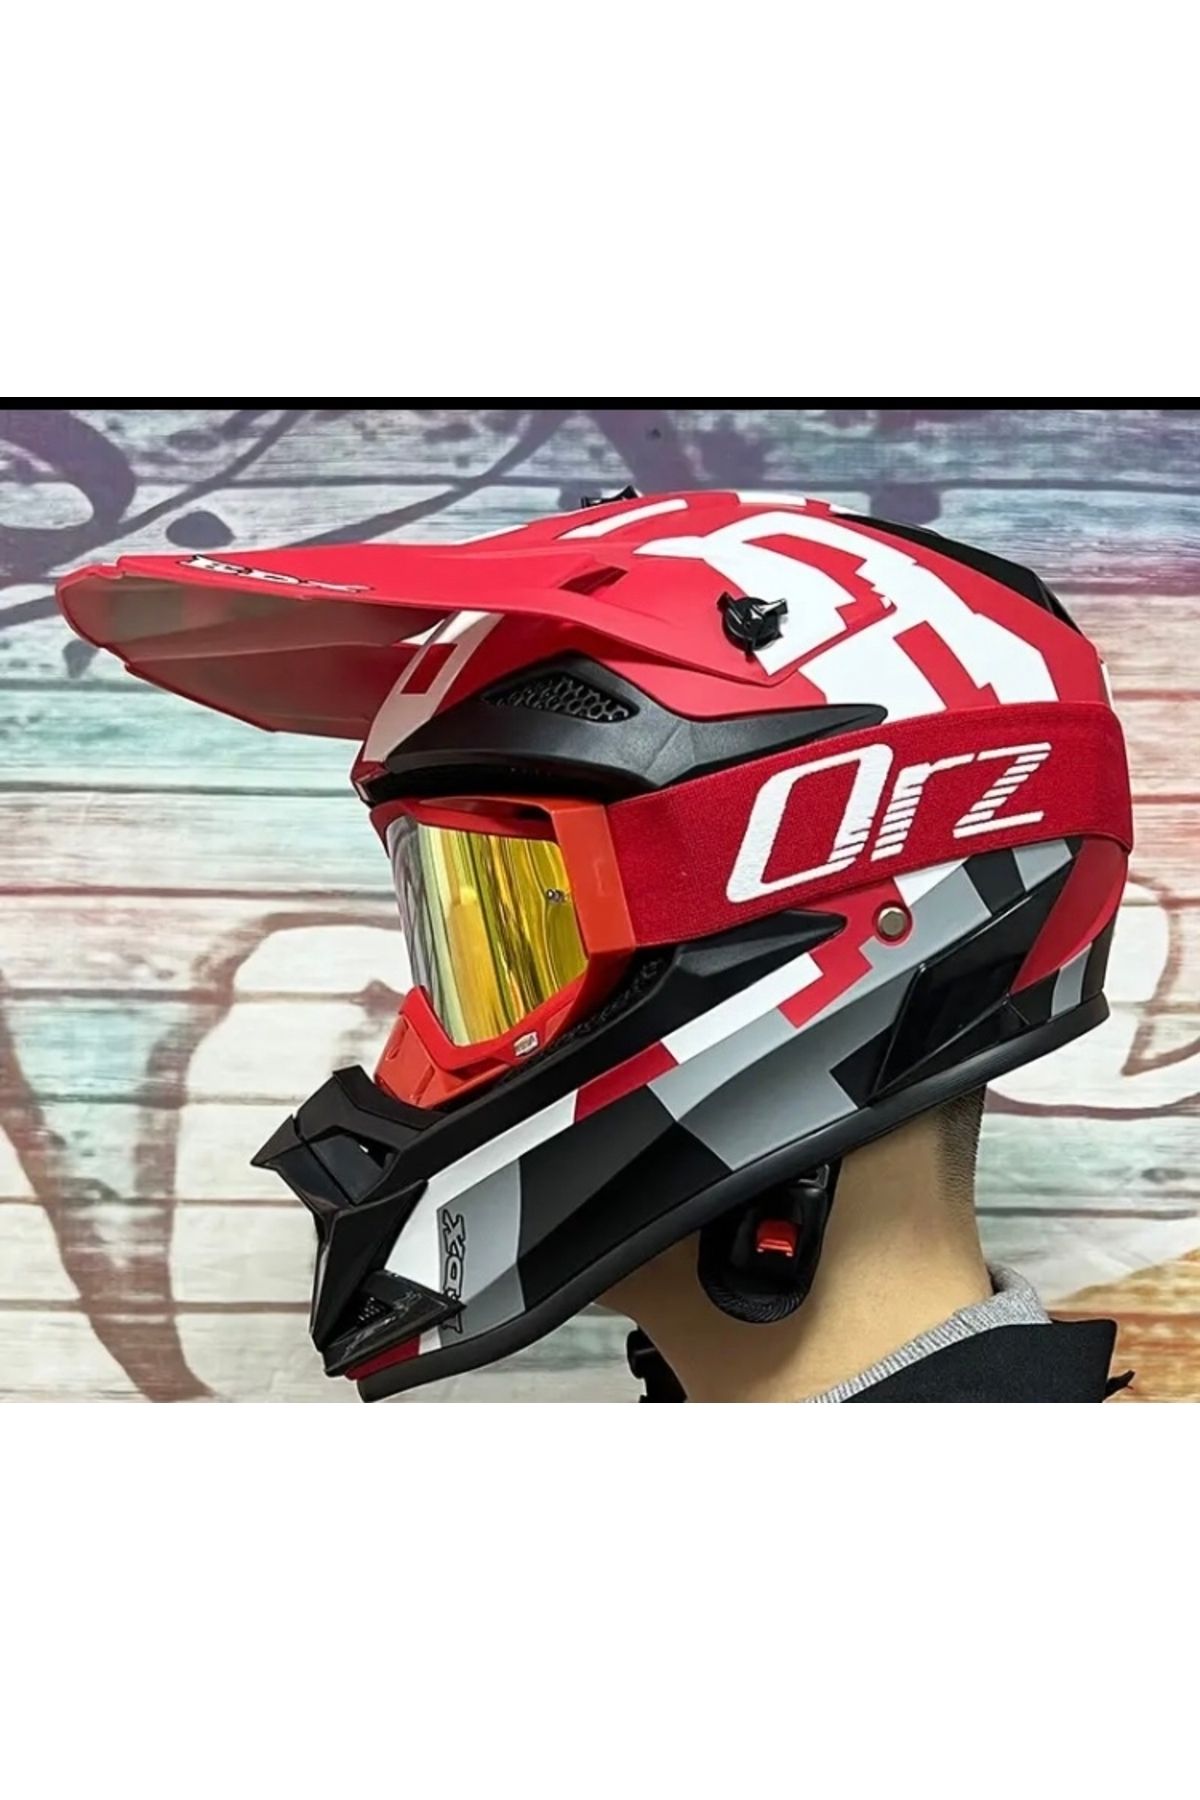 EDX FullFace Bisiklet Kaskı-Kırmızı (Gözlük+Maske Hediyeli)